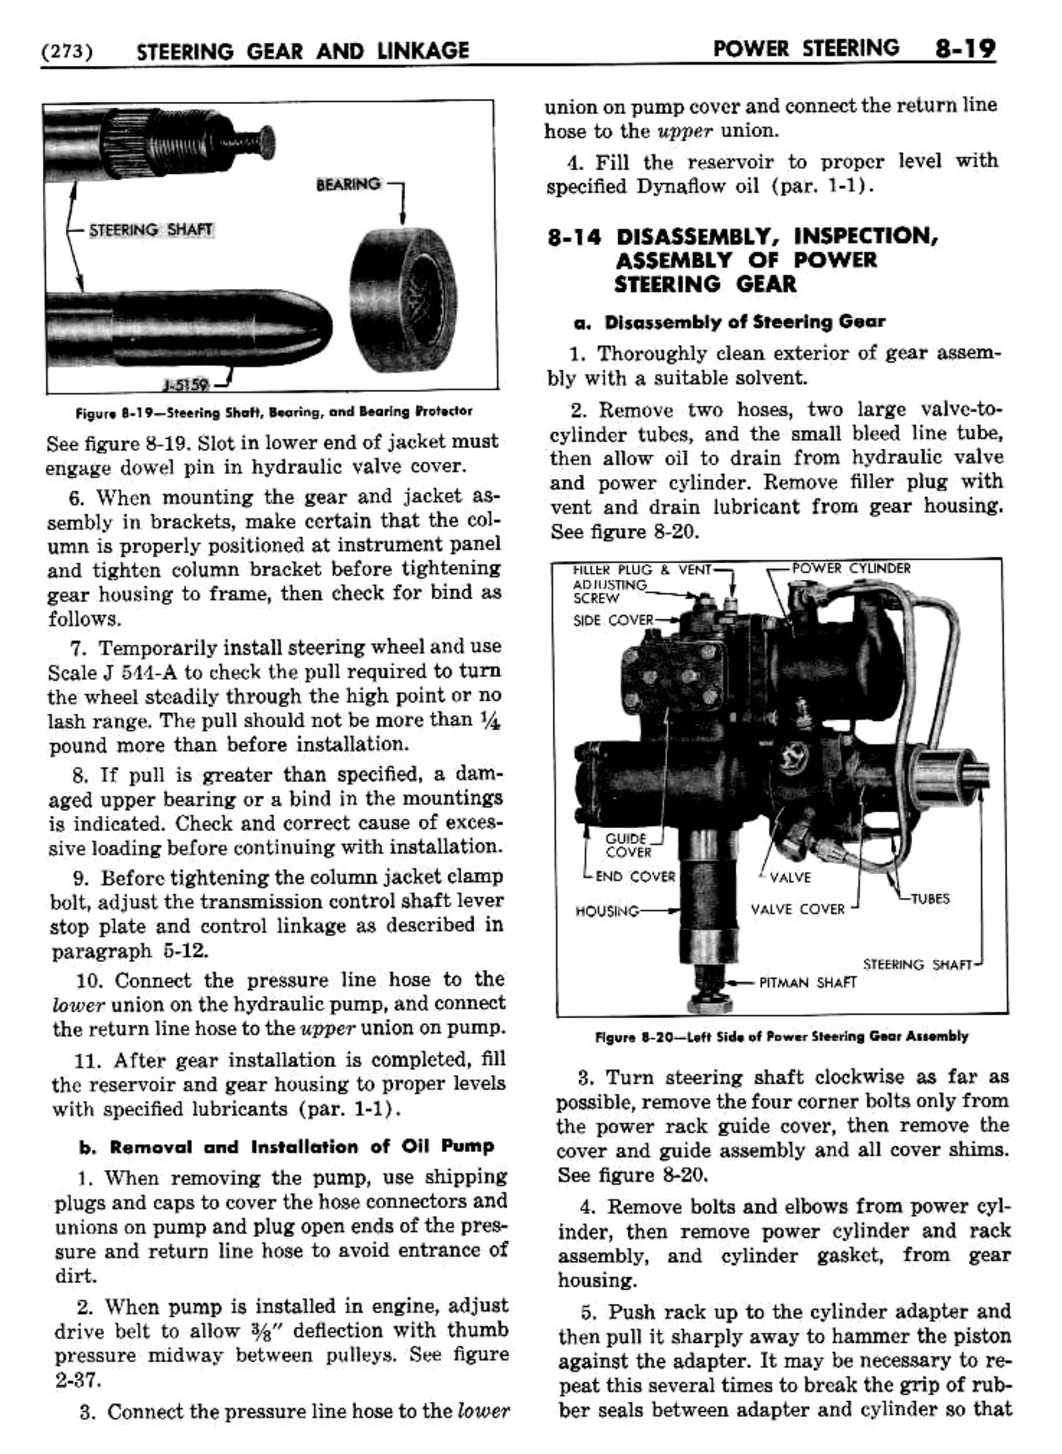 n_09 1954 Buick Shop Manual - Steering-019-019.jpg